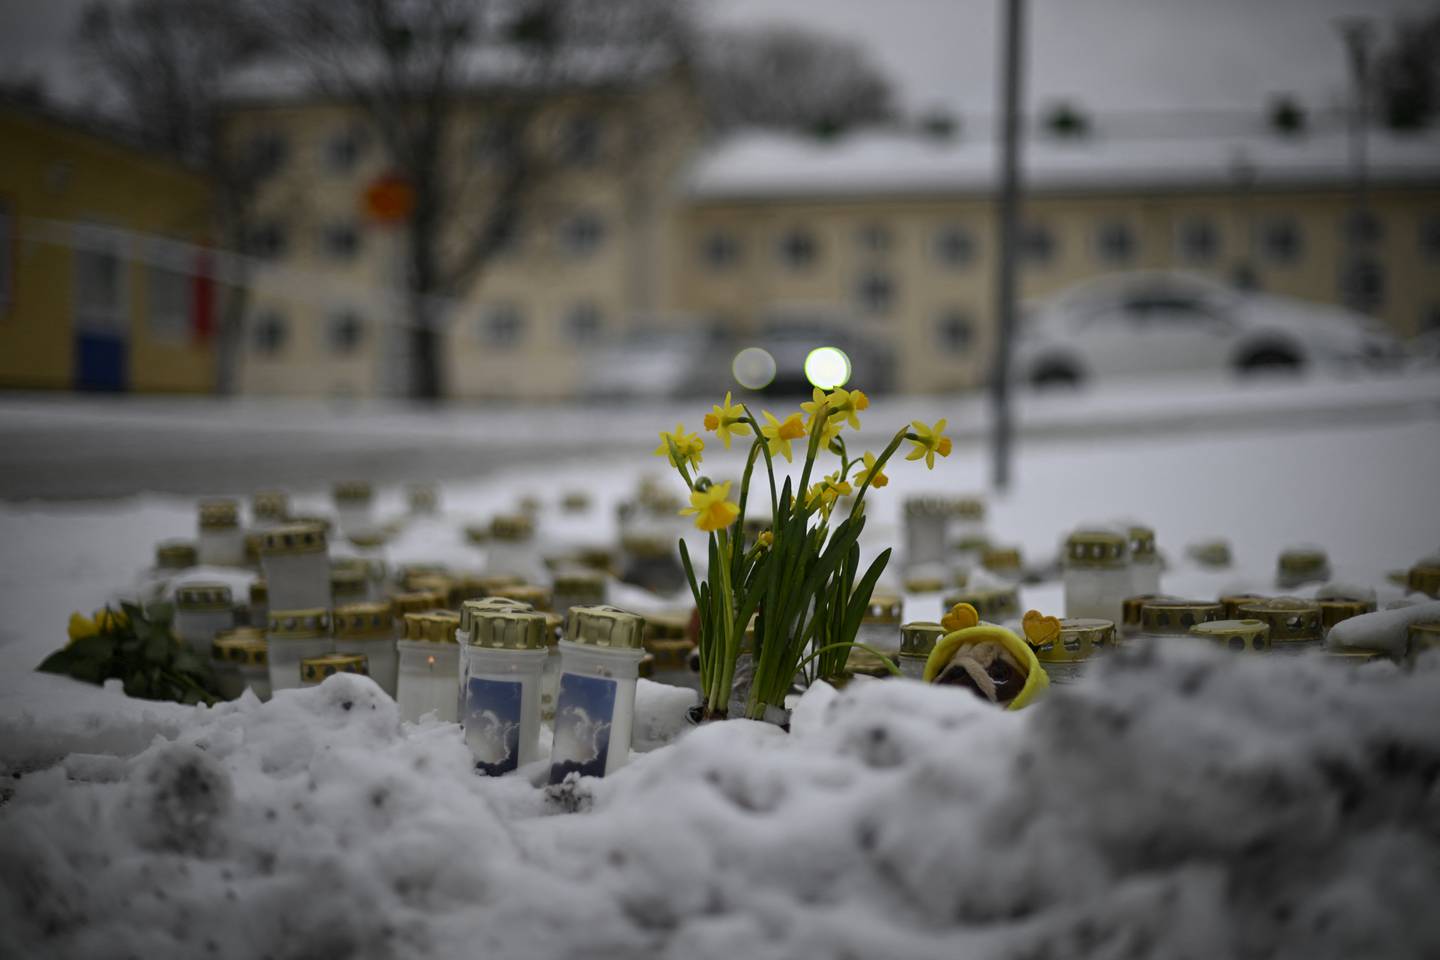 Se colocan velas y flores en la nieve frente a la escuela Viertola para rendir homenaje a las víctimas en Vantaa, en el norte de la capital finlandesa, Helsinki.  (Foto de Olivier MORIN / AFP)